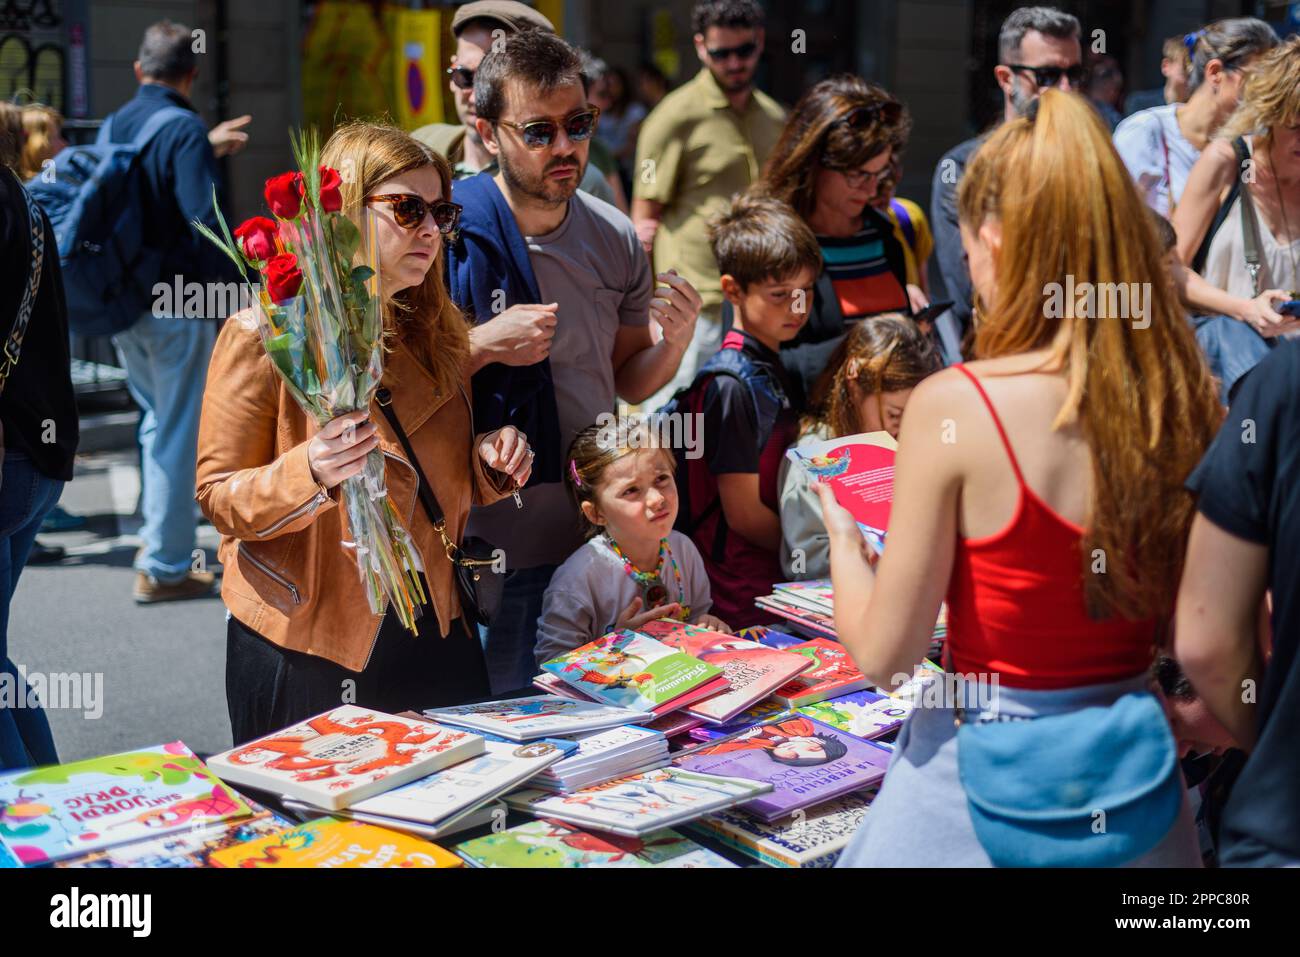 Barcelone, Espagne. 23rd avril 2023. Une famille est vue acheter des livres tout en tenant des roses rouges pendant la fête catalane traditionnelle de Saint George's Day. Ce jour-là, connu sous le nom de « jour de Saint-Georges » (Diada de Sant Jordi en catalan), l'amour et la littérature sont célébrés par la vente de livres et de roses rouges dans tout le pays. Depuis l'année 1997, le slogan officiel de ce jour a été "Une rose pour l'amour, et un livre pour toujours". Crédit : SOPA Images Limited/Alamy Live News Banque D'Images